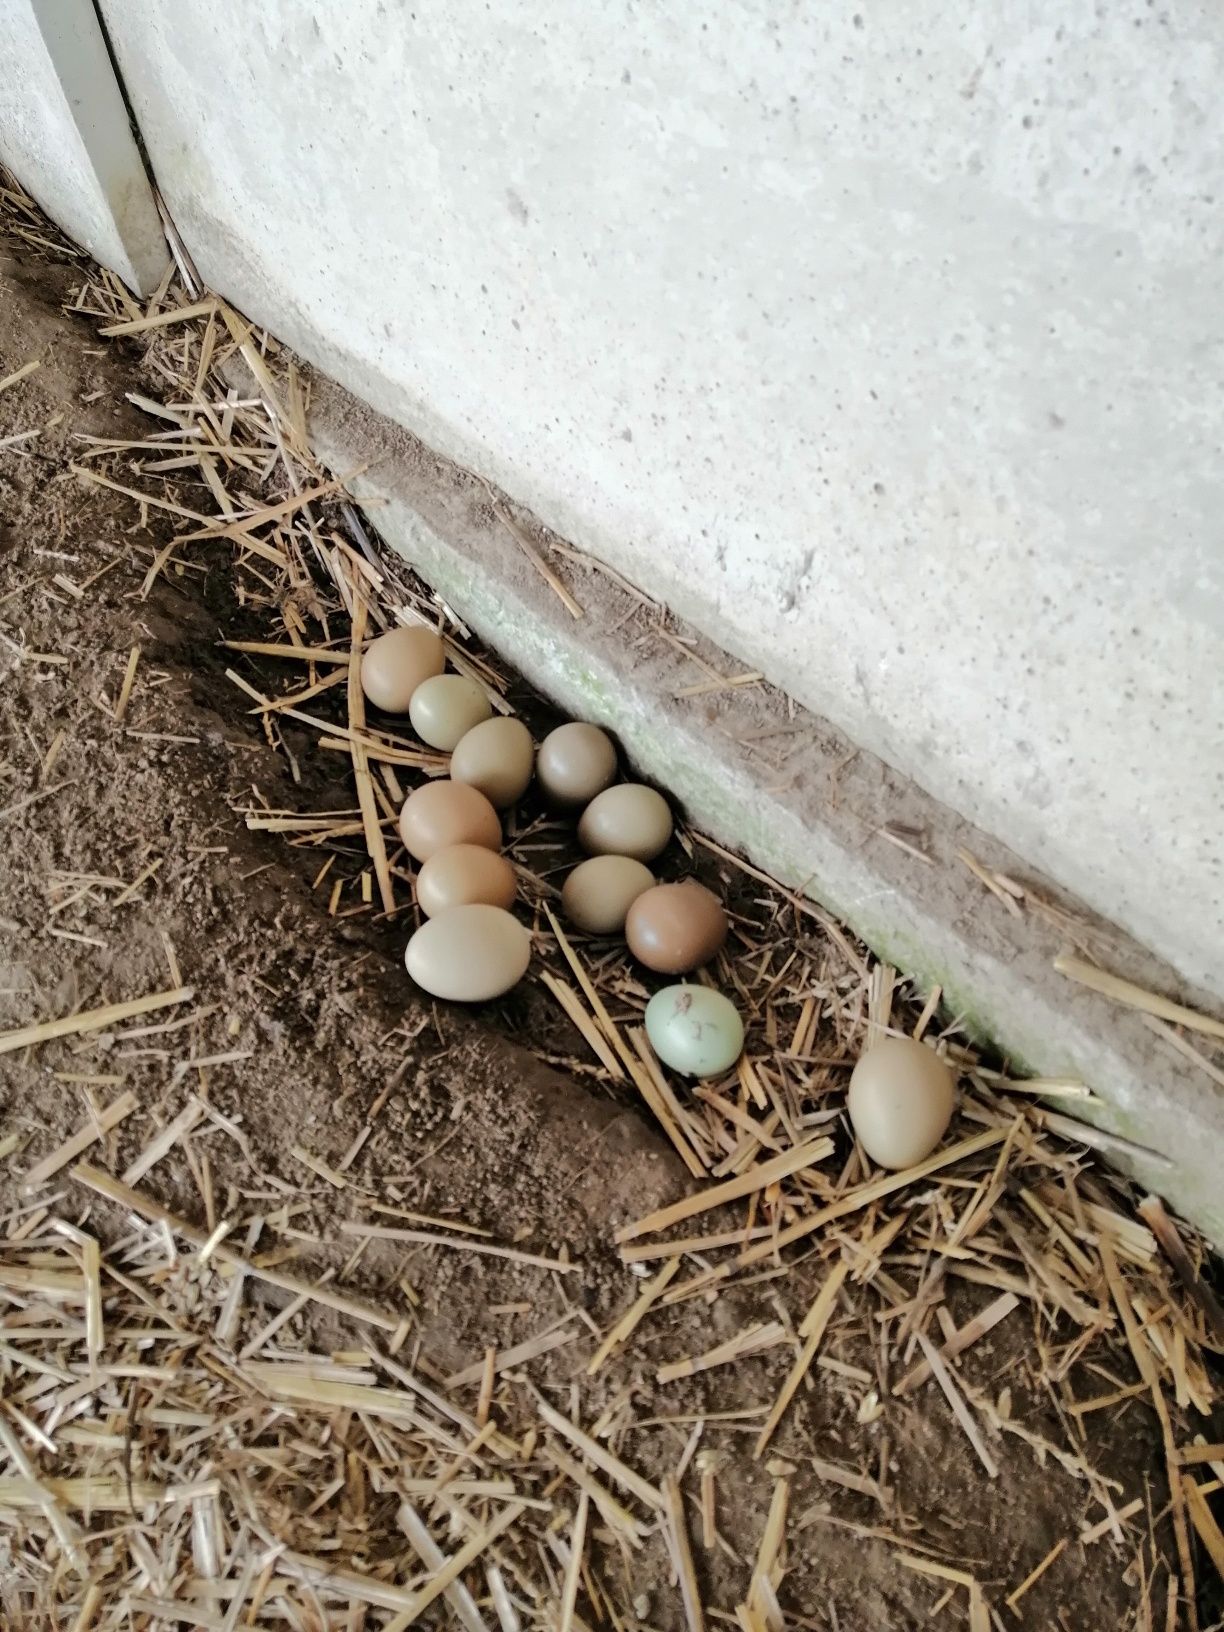 Інкубаційні яйця фазана